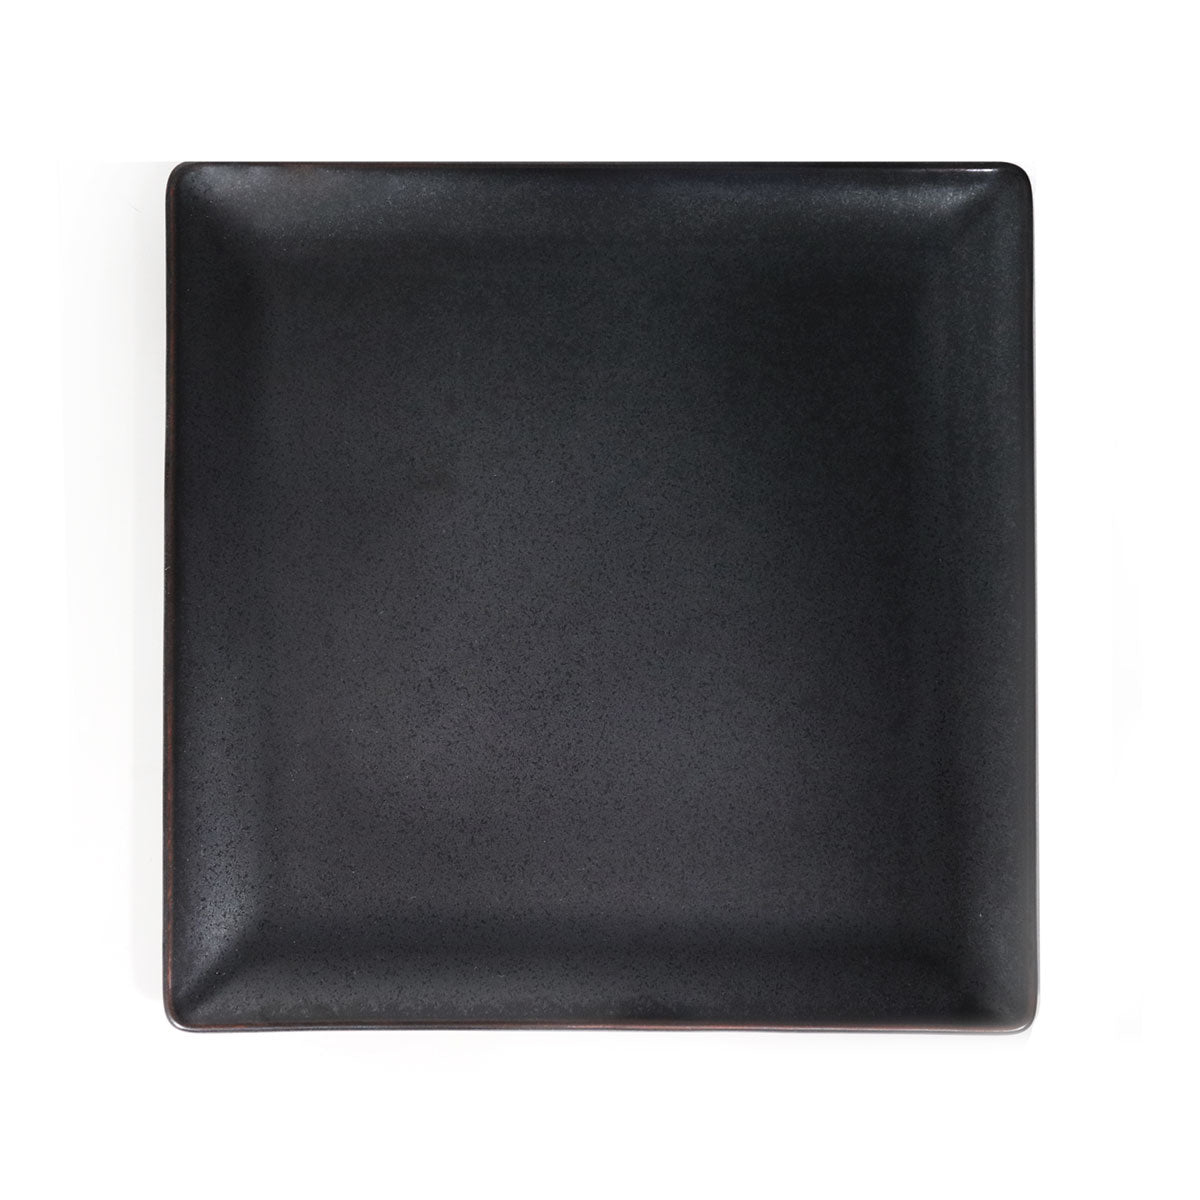 BORA BORA - Square plate 27 cm